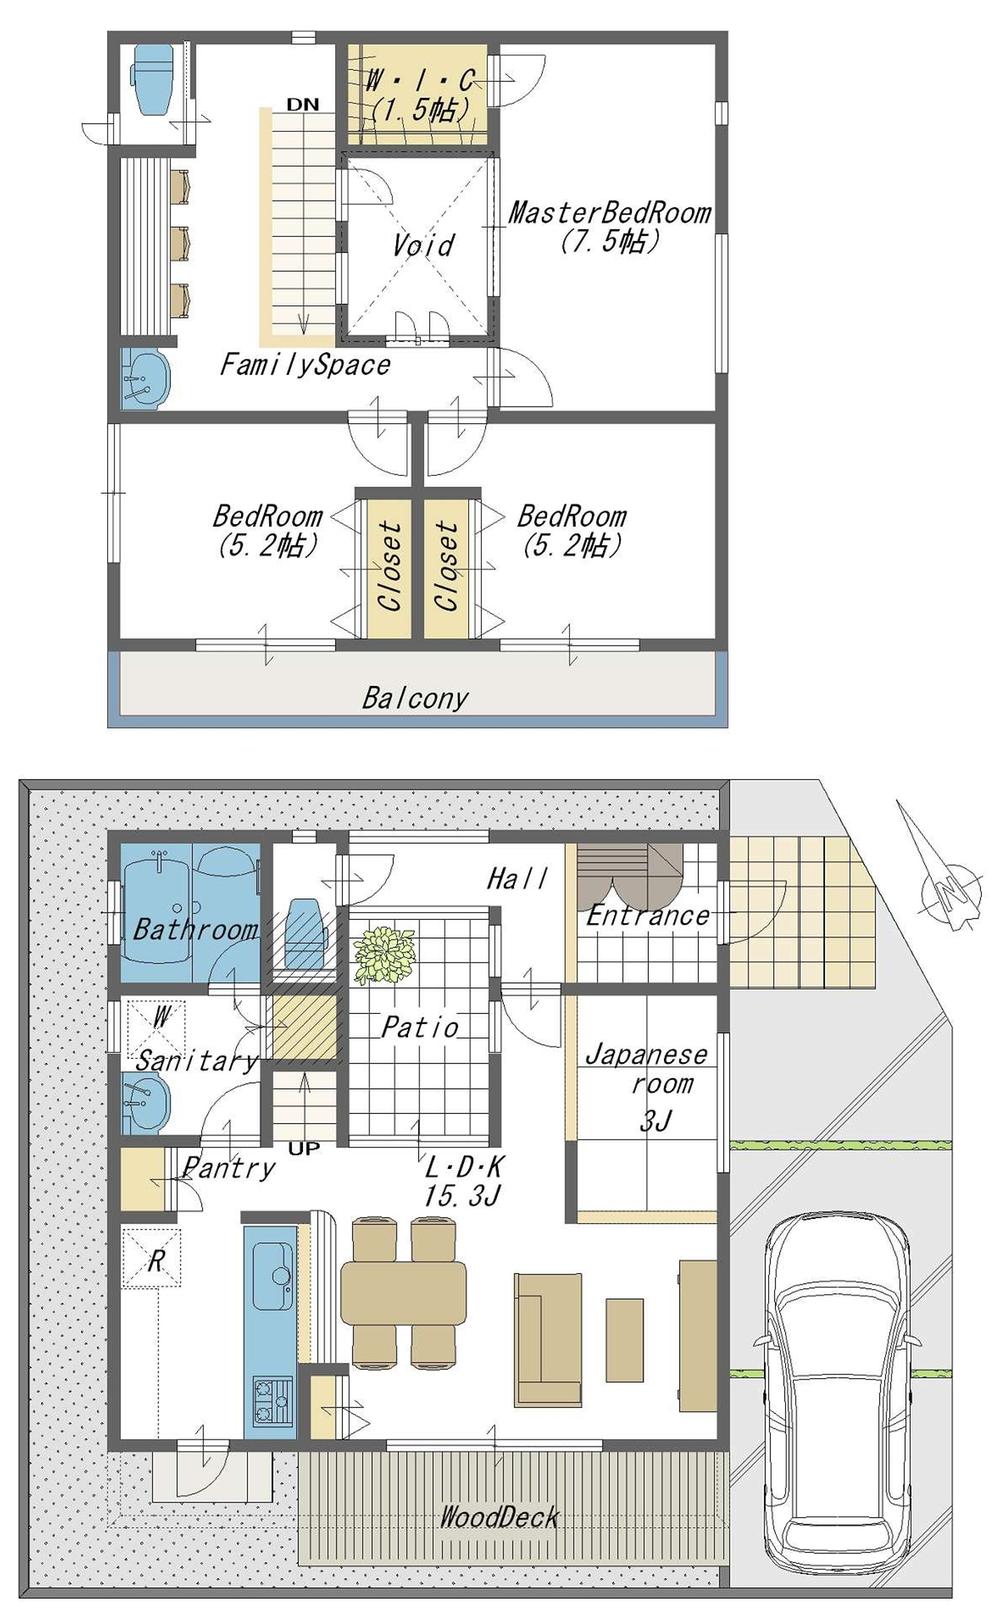 Floor plan. (A Building), Price 42,800,000 yen, 3LDK+S, Land area 106.84 sq m , Building area 97.7 sq m